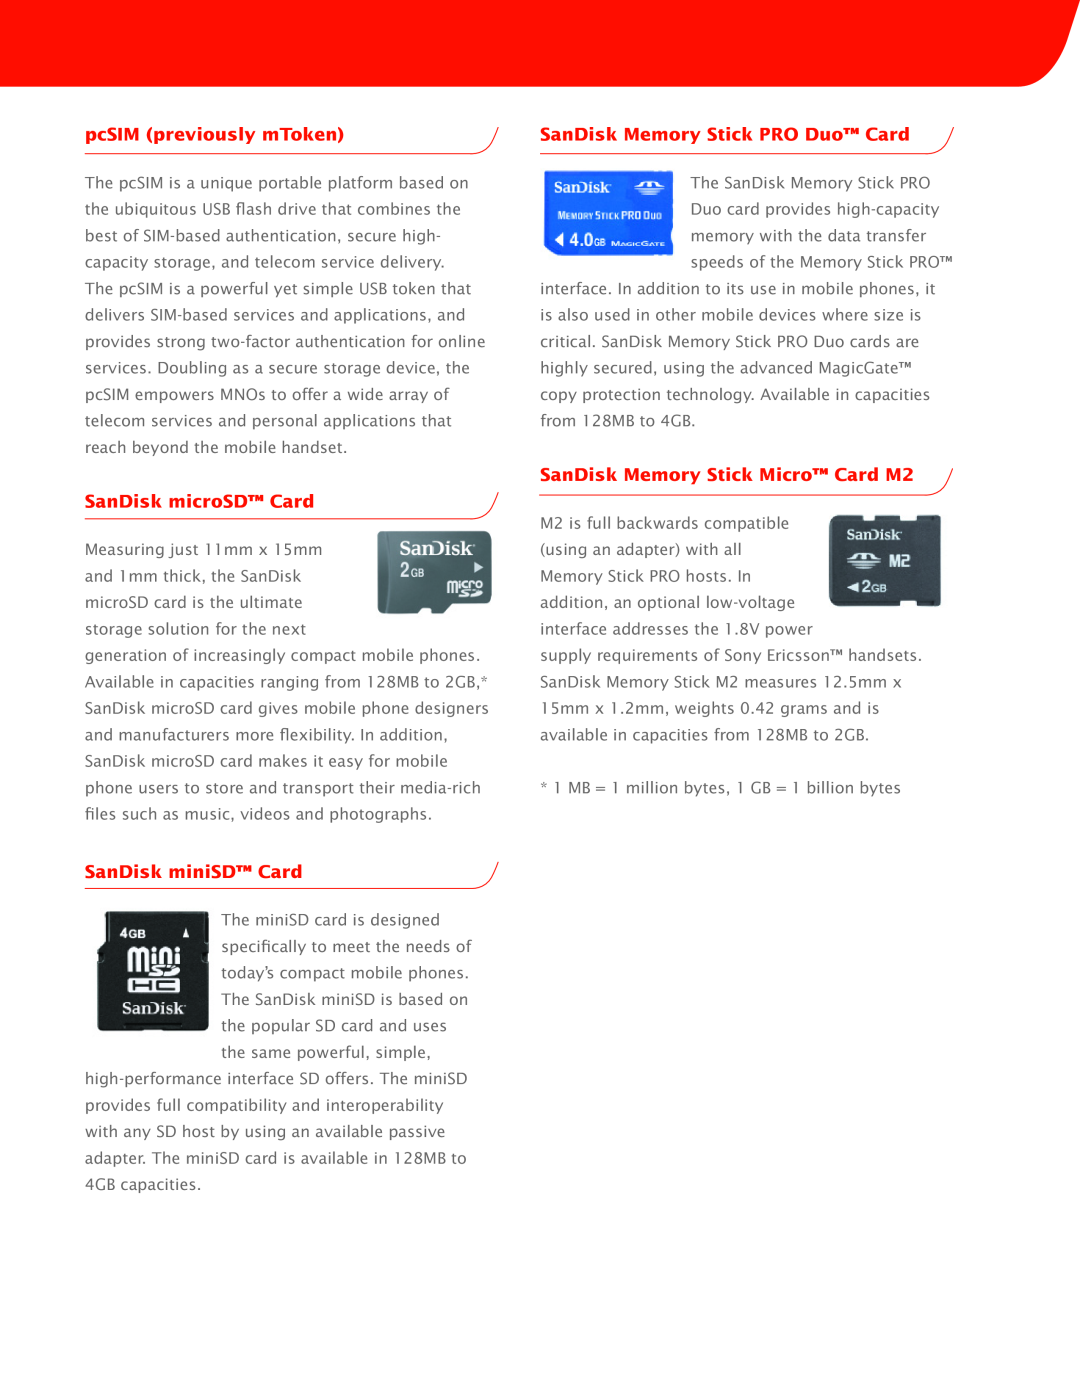 SanDisk MagicGate pcSIM previously mToken, SanDisk microSD Card, SanDisk miniSD Card, SanDisk Memory Stick PRO Duo Card 